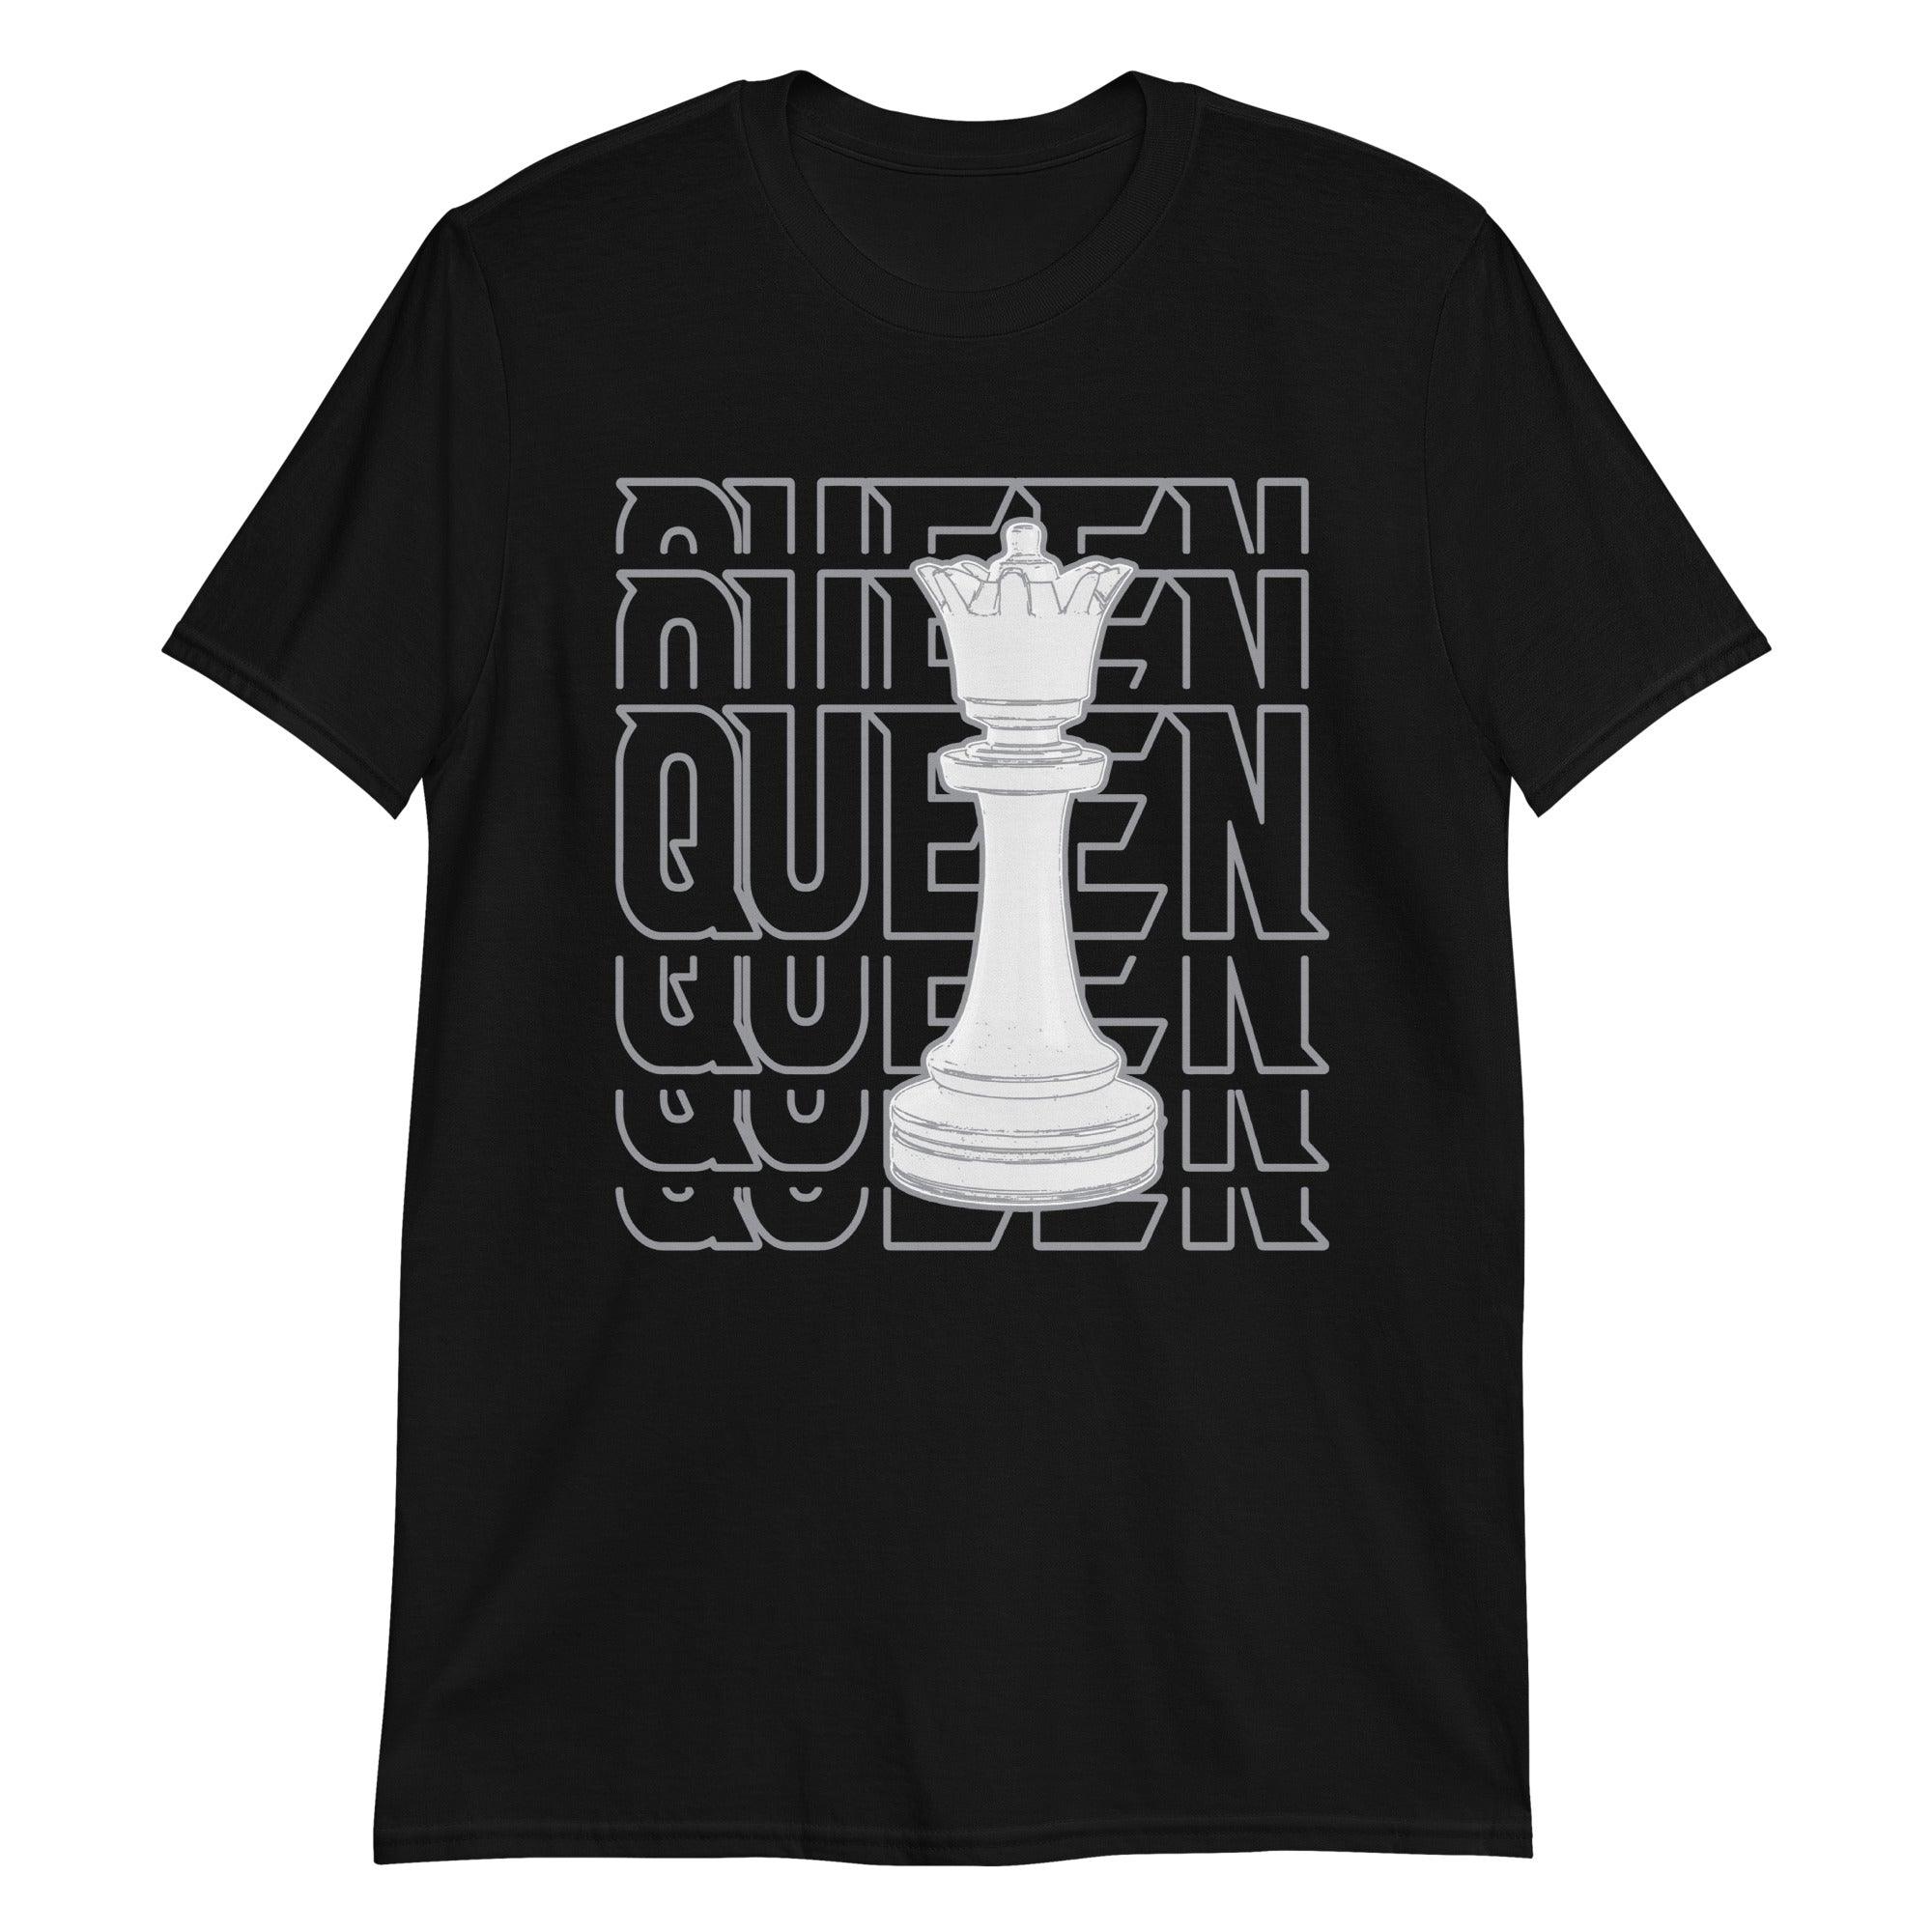 Queen Sneaker Tee for Jordan 1s photo